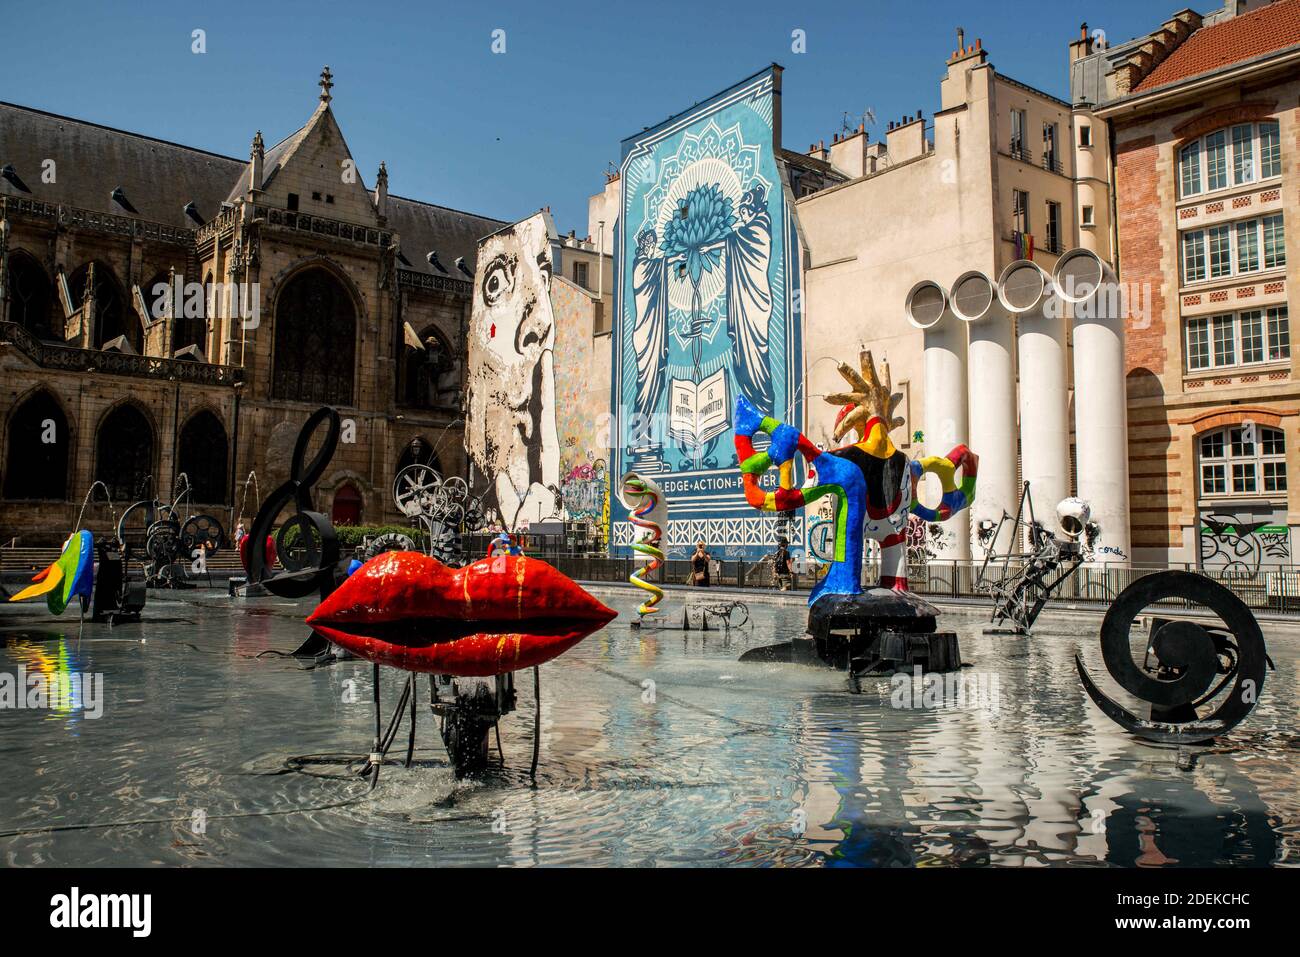 Una vista della nuova pittura di arte di strada dell'artista statunitense Shepard Fairey di fronte alla fontana Stravinsky a Parigi, in Francia, il 29 giugno 2019. Foto di Danis Prezat/Avenir Pictures/ABACAPRESS.COM Foto Stock